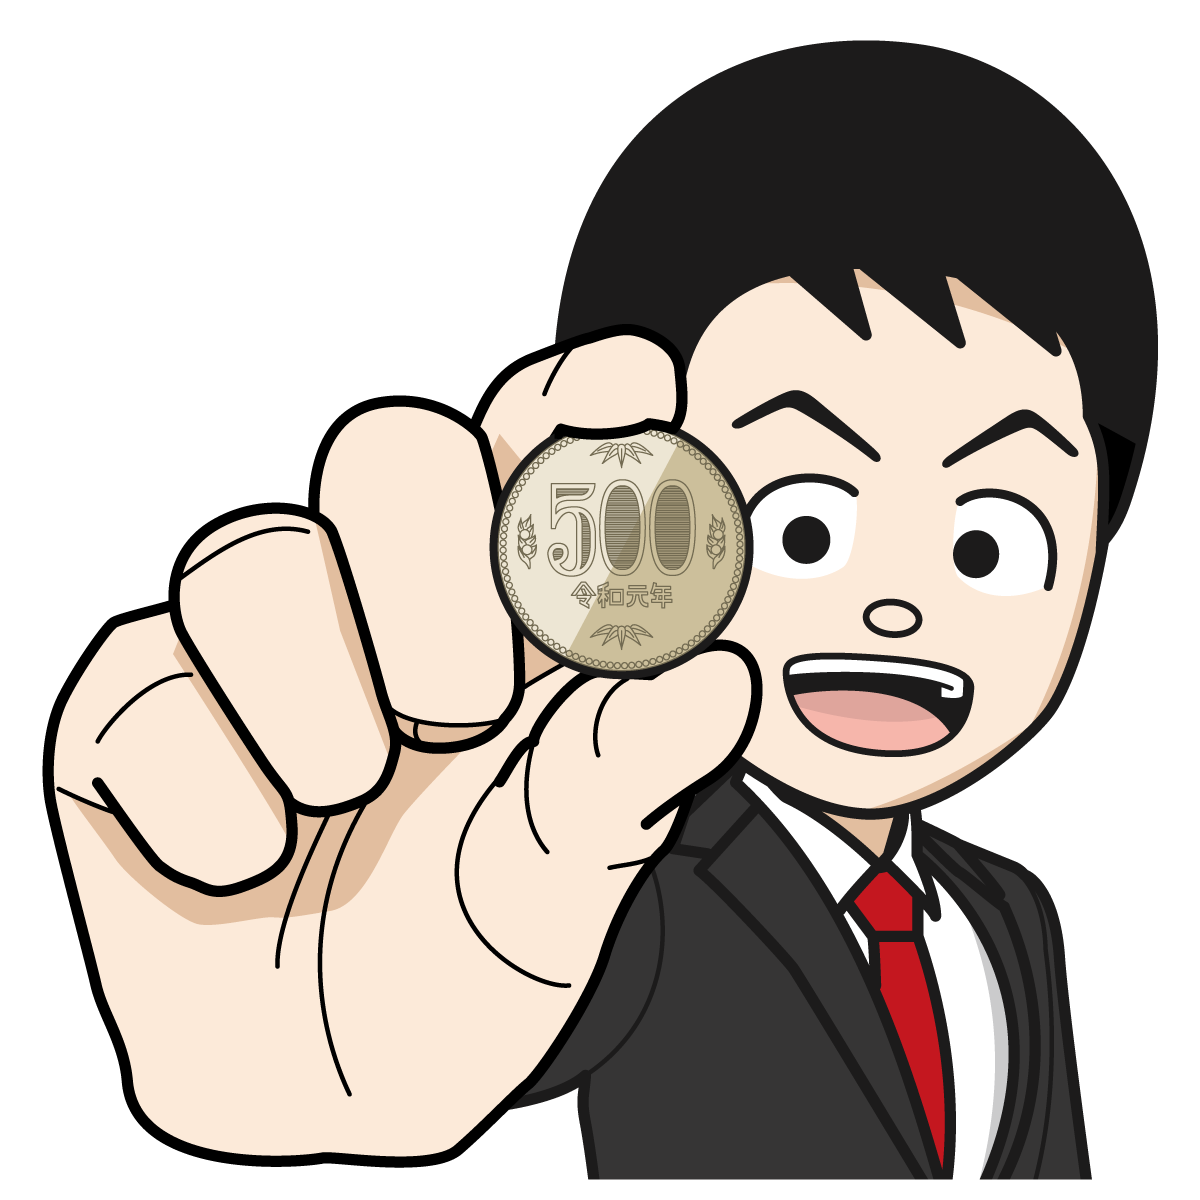 500円を持つサラリーマン 銀行員 公務員 男 Item 15 イラスト Mido Kichi